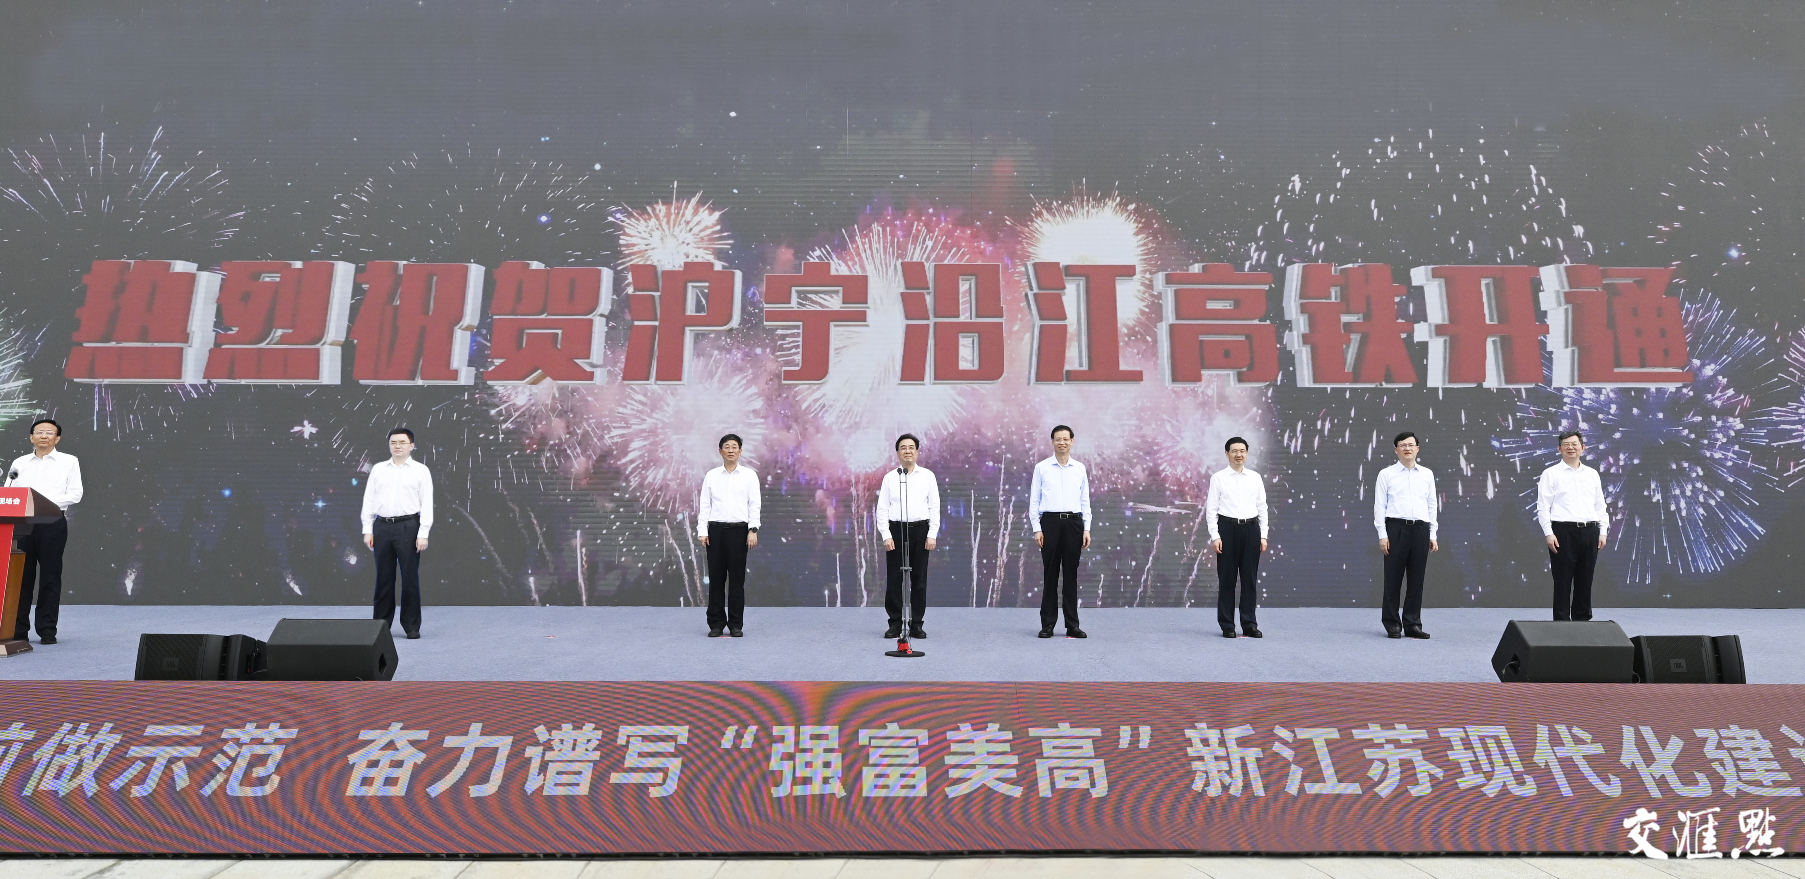 沪宁沿江高铁开通运营 信长星宣布开通 许昆林王同军讲